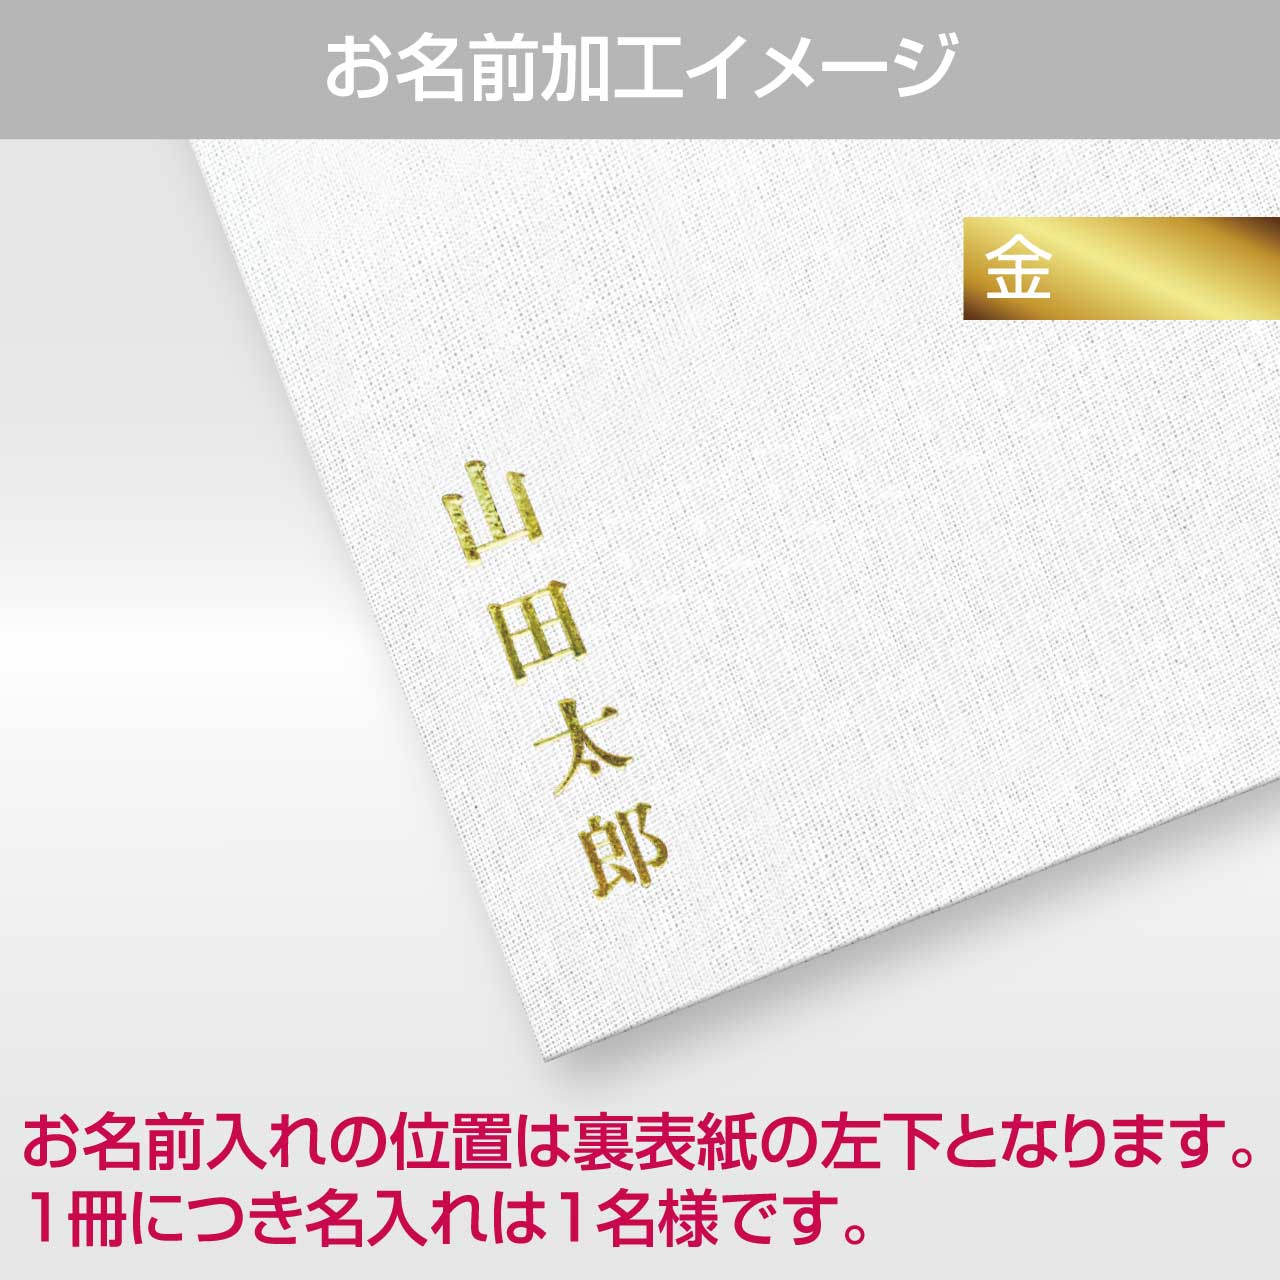 Goshuin holder (spread size) "Golden Seikanami" Chitose Midori